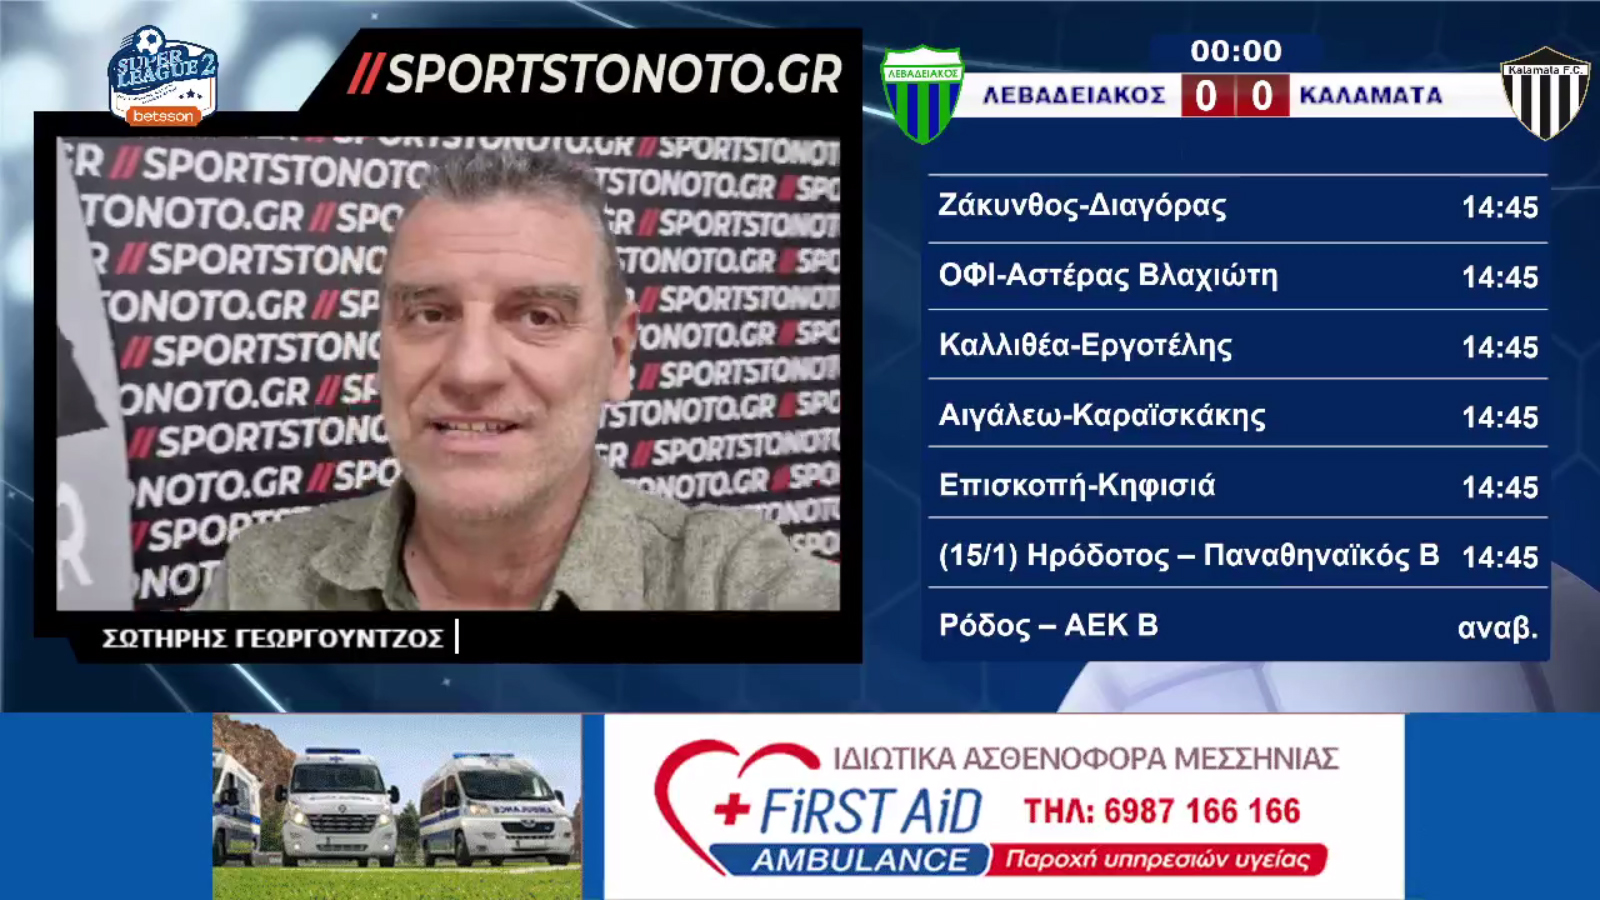 Ο Σωτήρης σχολιάζει &#8220;ζωντανά&#8221; από τα νέα στούντιο του Sportstonoto.gr, την &#8220;μάχη&#8221; της Λιβαδειάς! Κυριακή 14:45&#8242;(video)